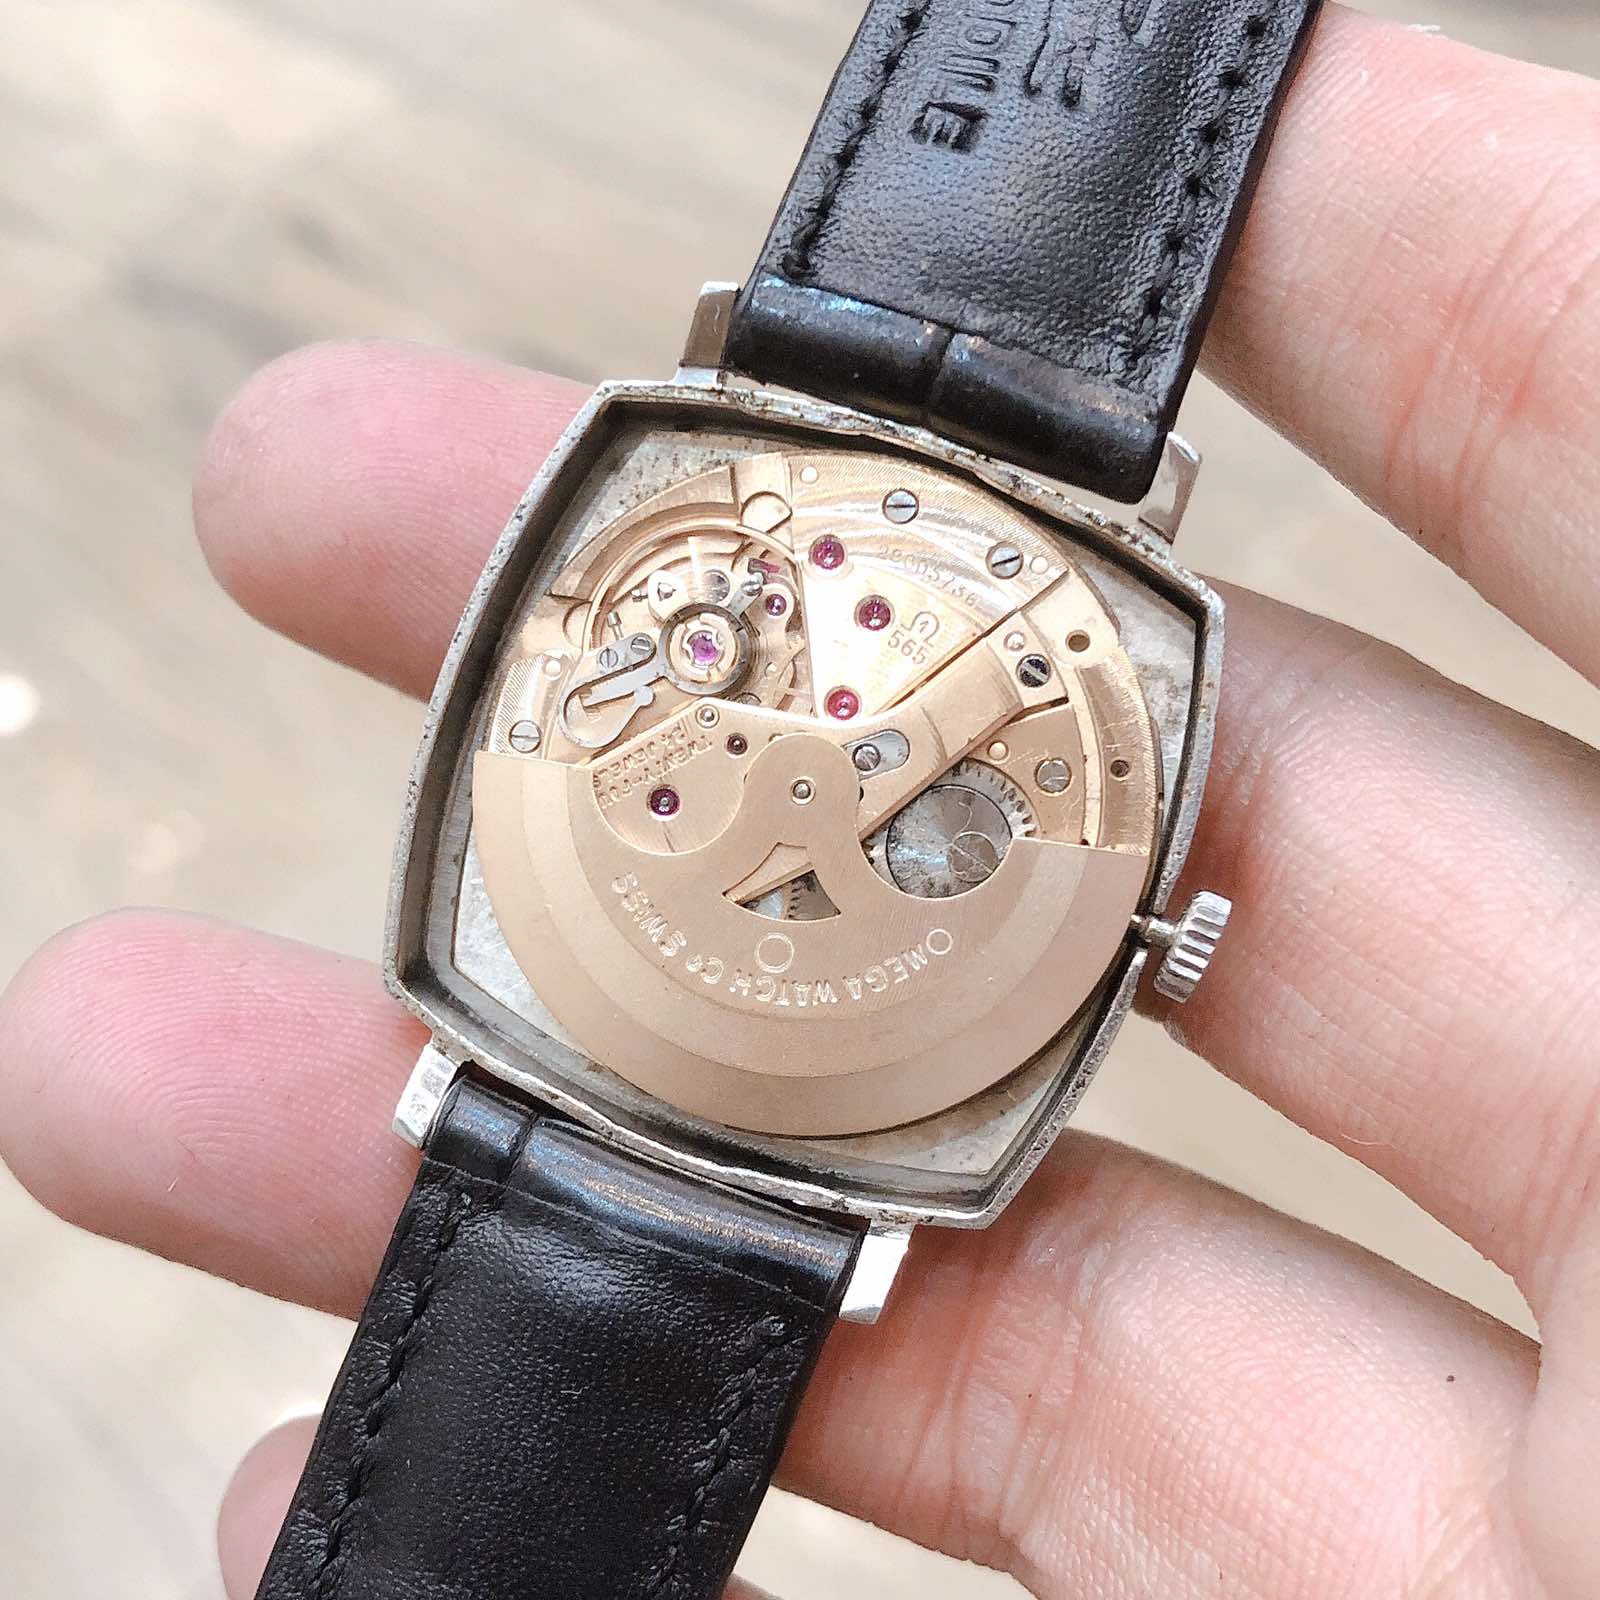 Toàn bộ đồng hồ cổ của donghott được chụp bằng điện thoại không qua chỉnh sửa để mang lại cái nhìn trung thực nhất cho các bạn về sản phẩm. Các bạn xem kỹ hình ảnh và thông tin kỹ thuật của đồng hồ nhé.